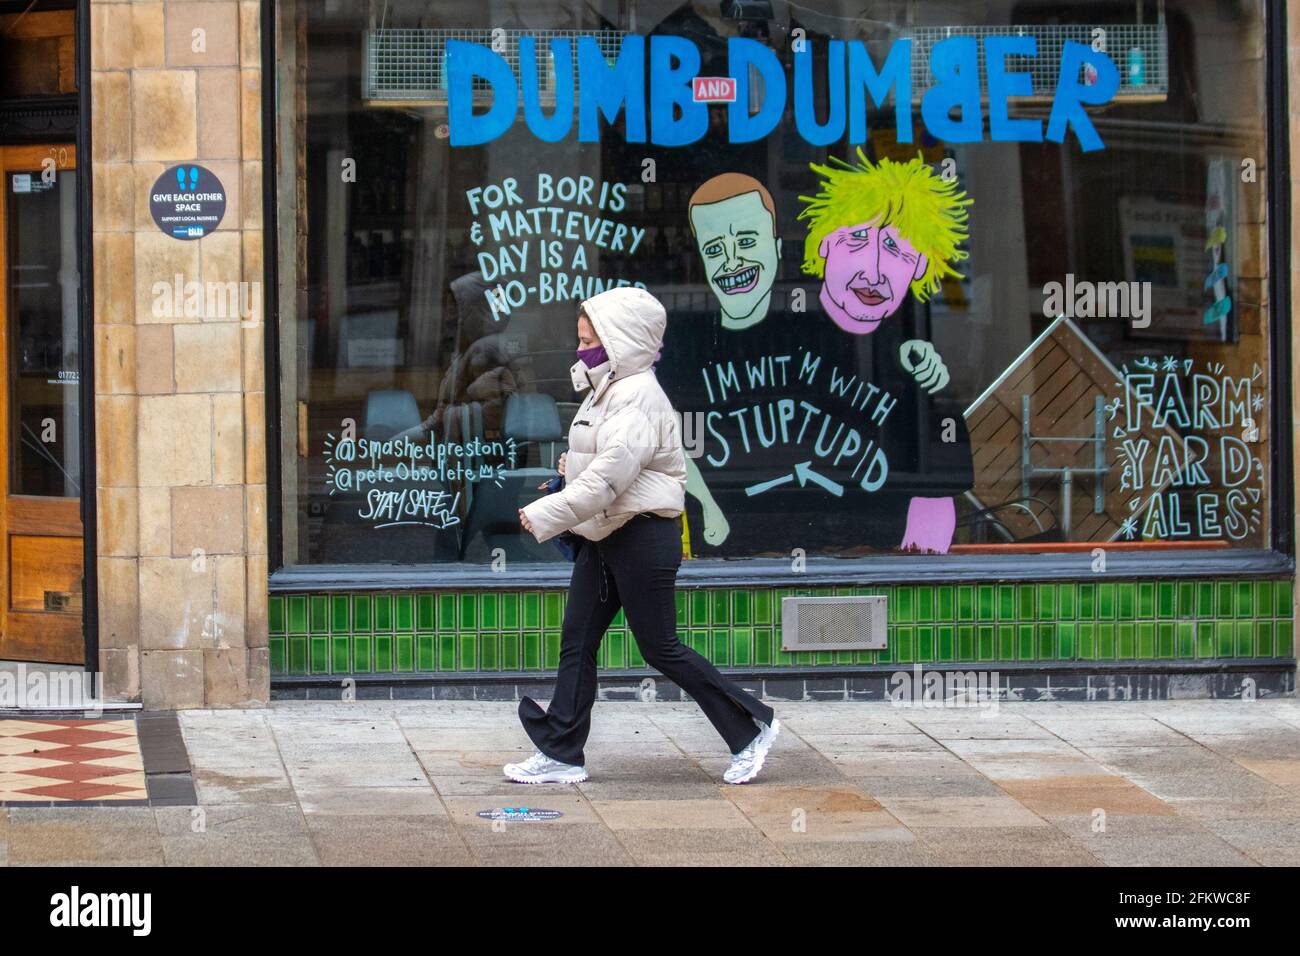 Boris Johnson Tory leader cartoon immagini in Preston; Lancashire. Maggio 2021; tempo britannico; giacche impermeabili e cappotti impermeabili di anoraks sono l'ordine del giorno in una fredda giornata bagnata e ventosa. Satira, fumetti, caricature, cartoni animati politici satirici, parodia nel centro della città. Foto Stock